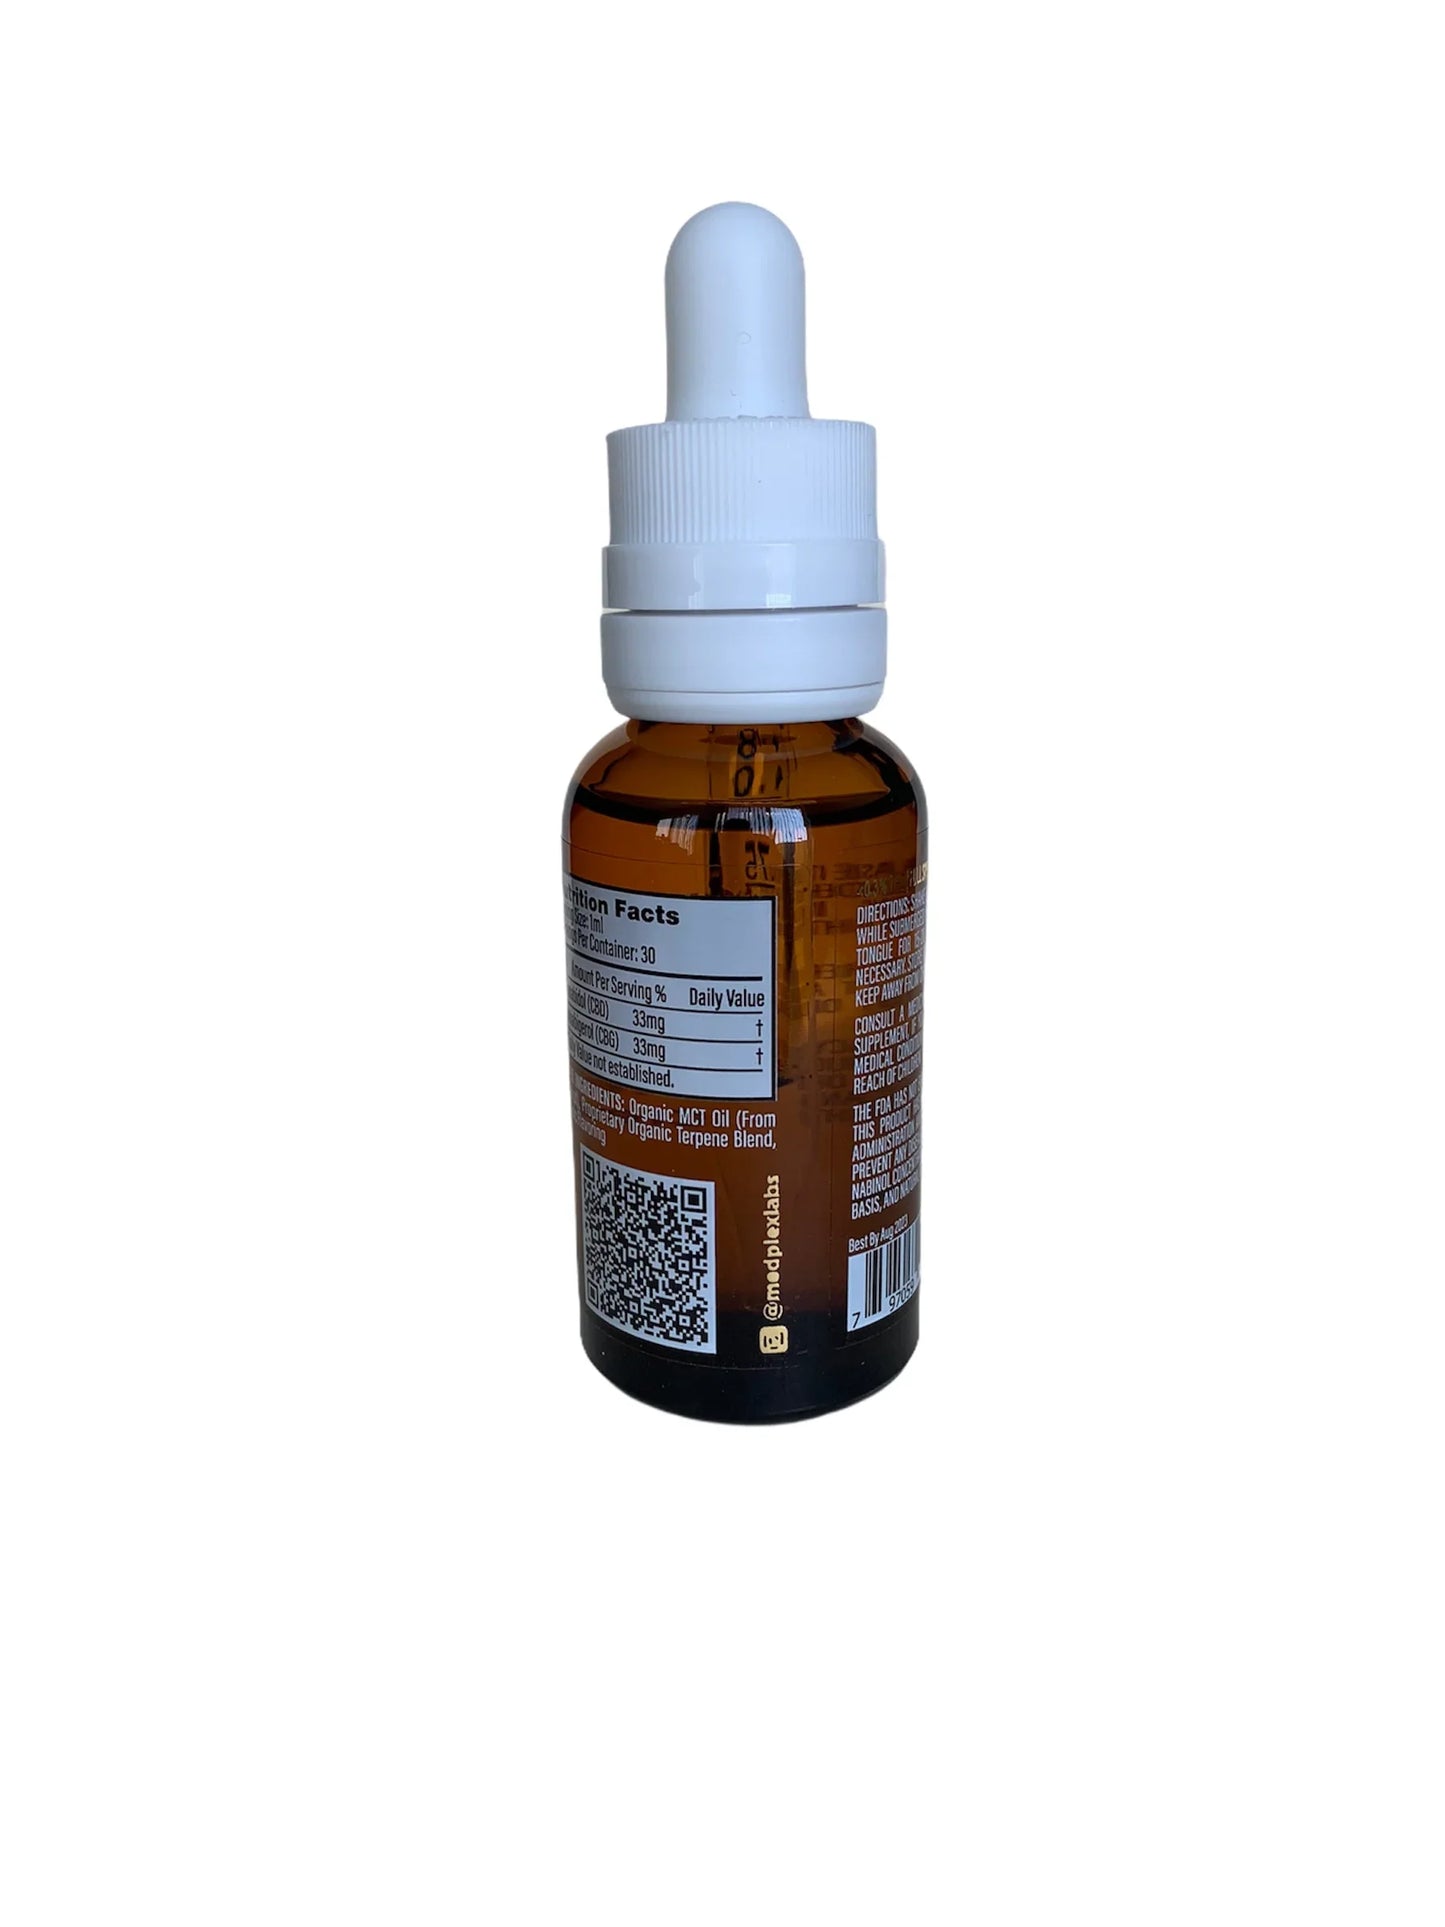 CBG + CBD Oil Clementine Kush Sativa Tincture Drops 2000mg